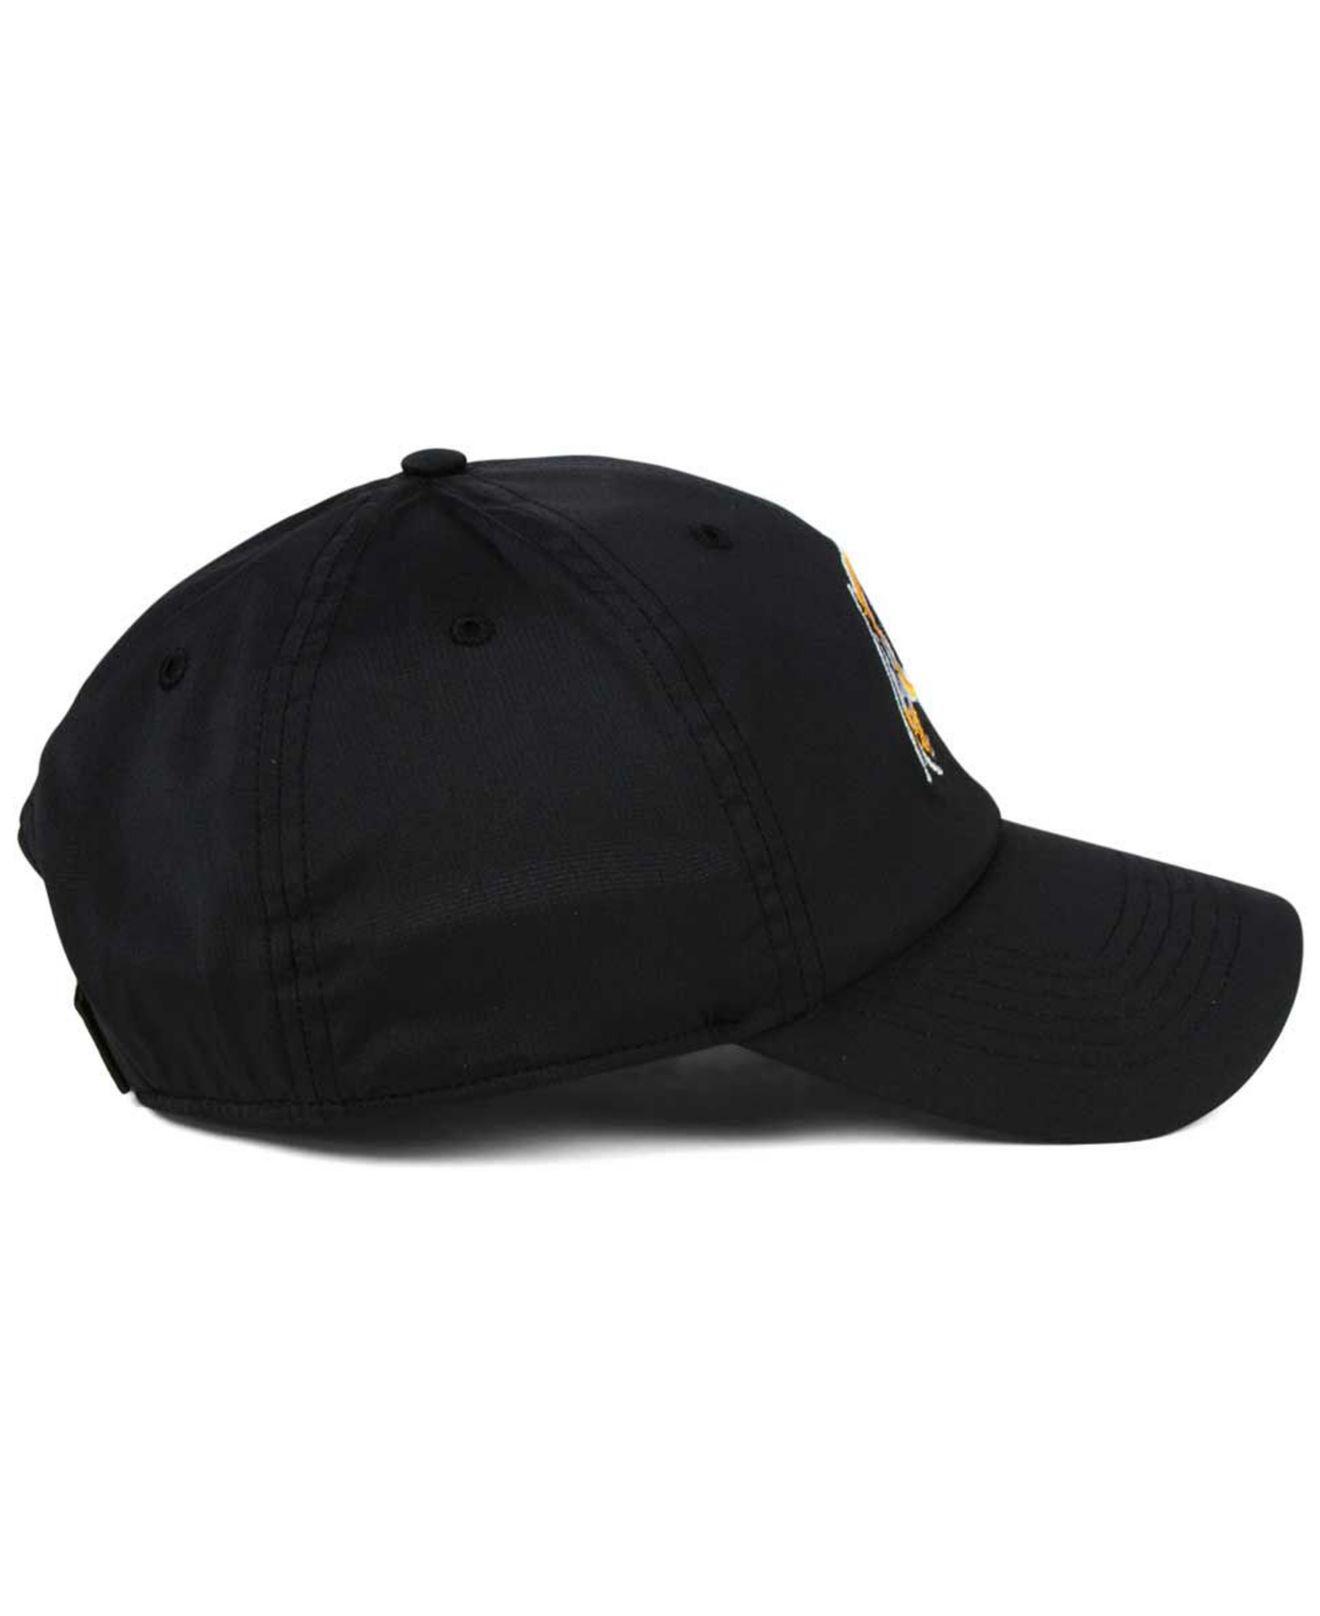 Washington Redskins 47 Brand Clean Up Adjustable Hat